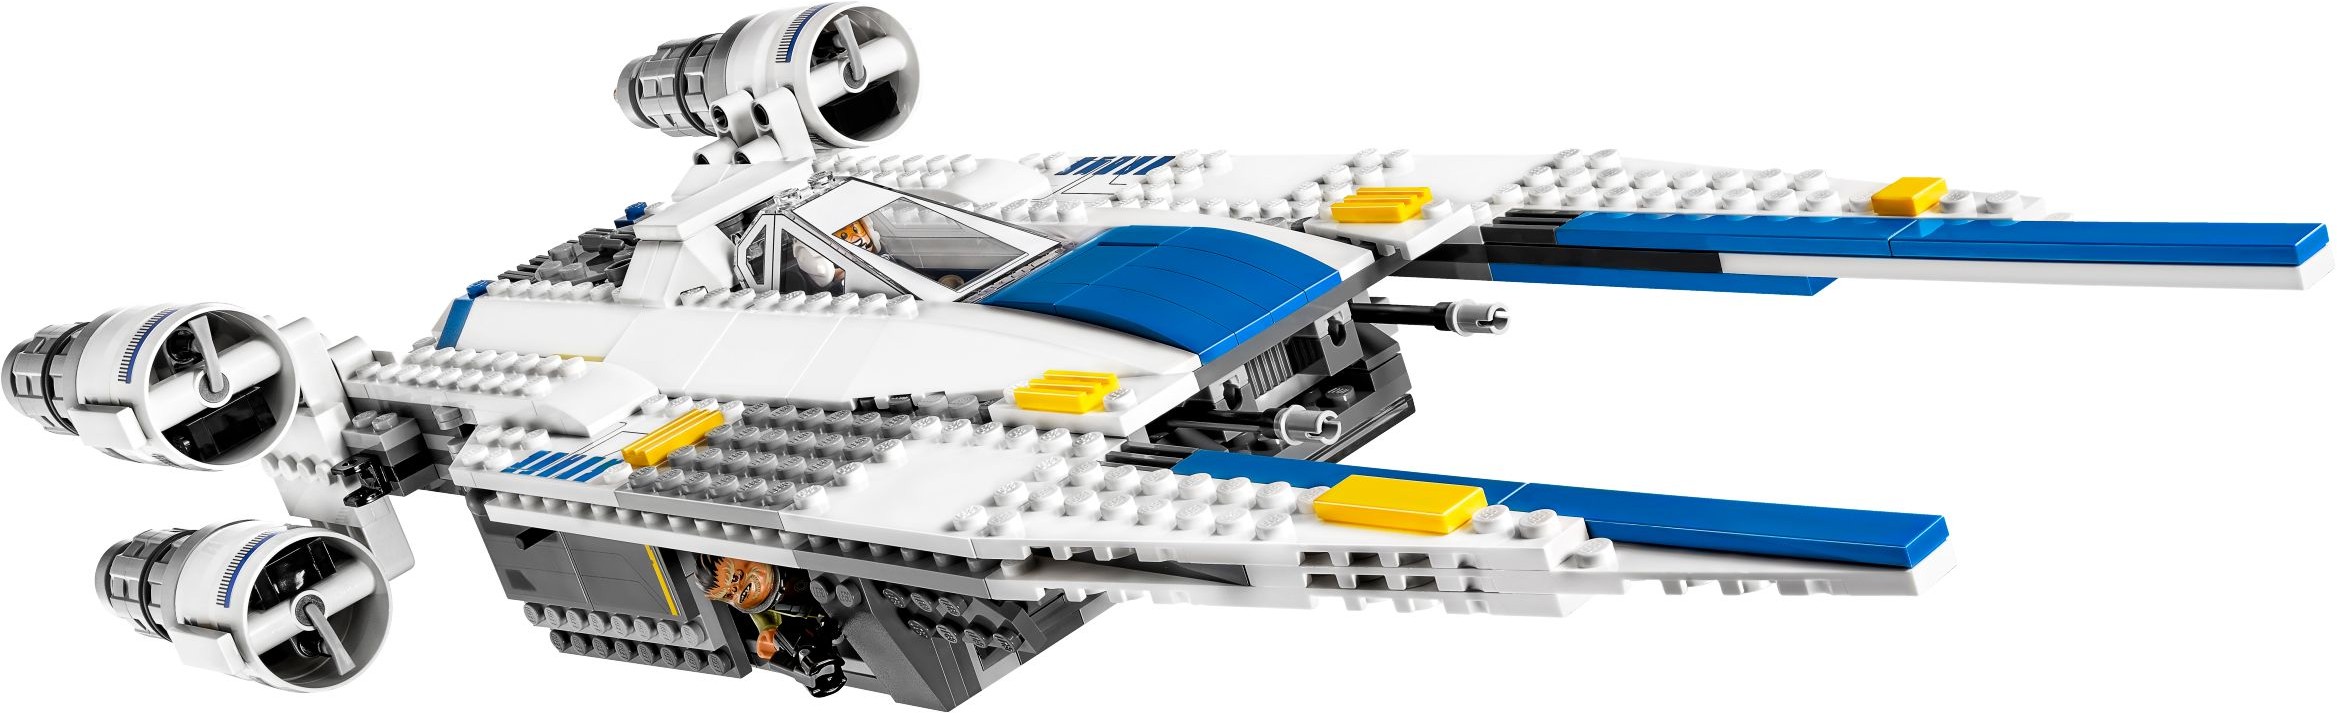 LEGO 75155